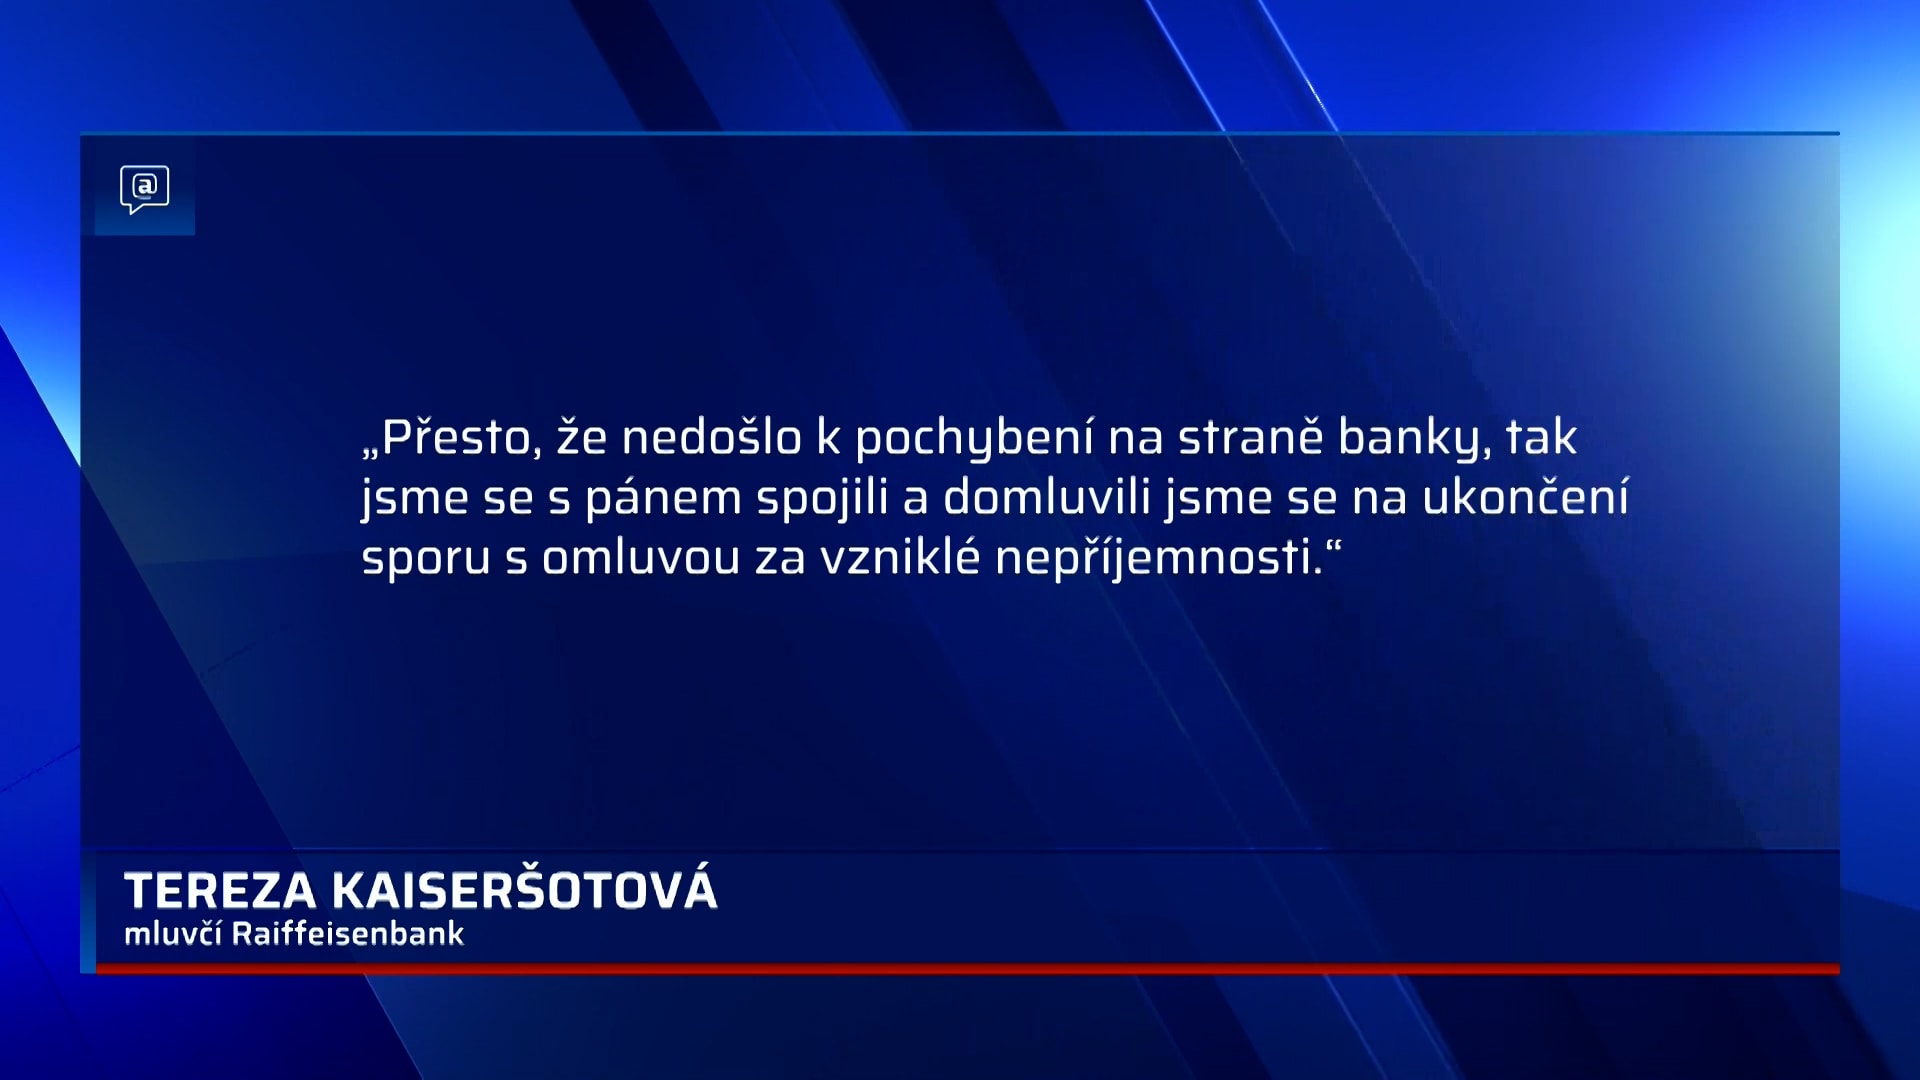 Banka v případě Vladimíra Bílka spletla rodná čísla.